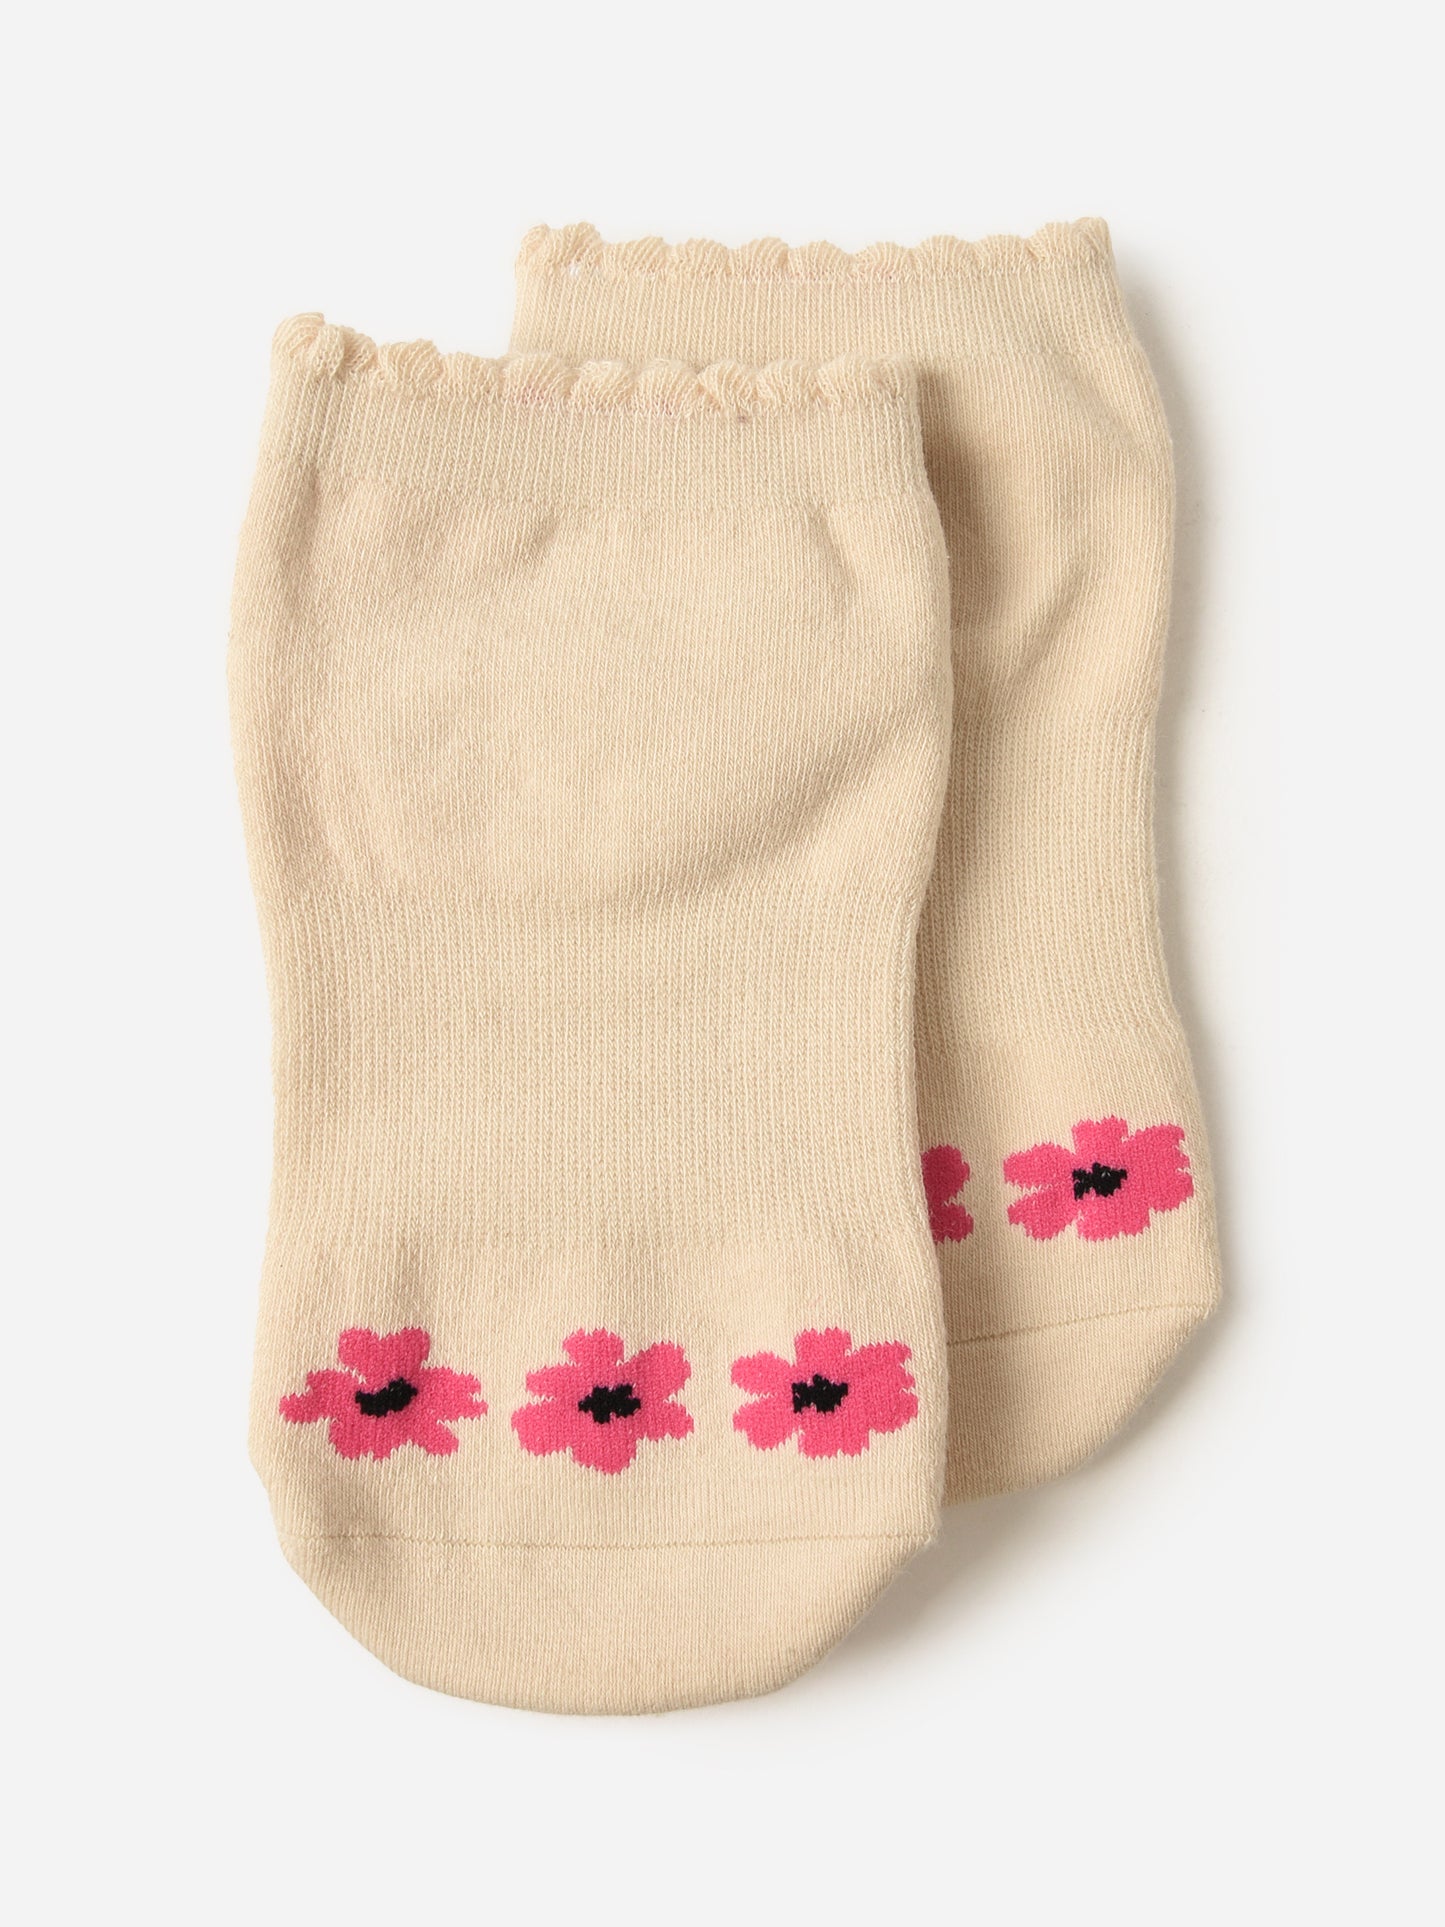 Pointe Studio Women's Blossom Full Foot Grip Socks